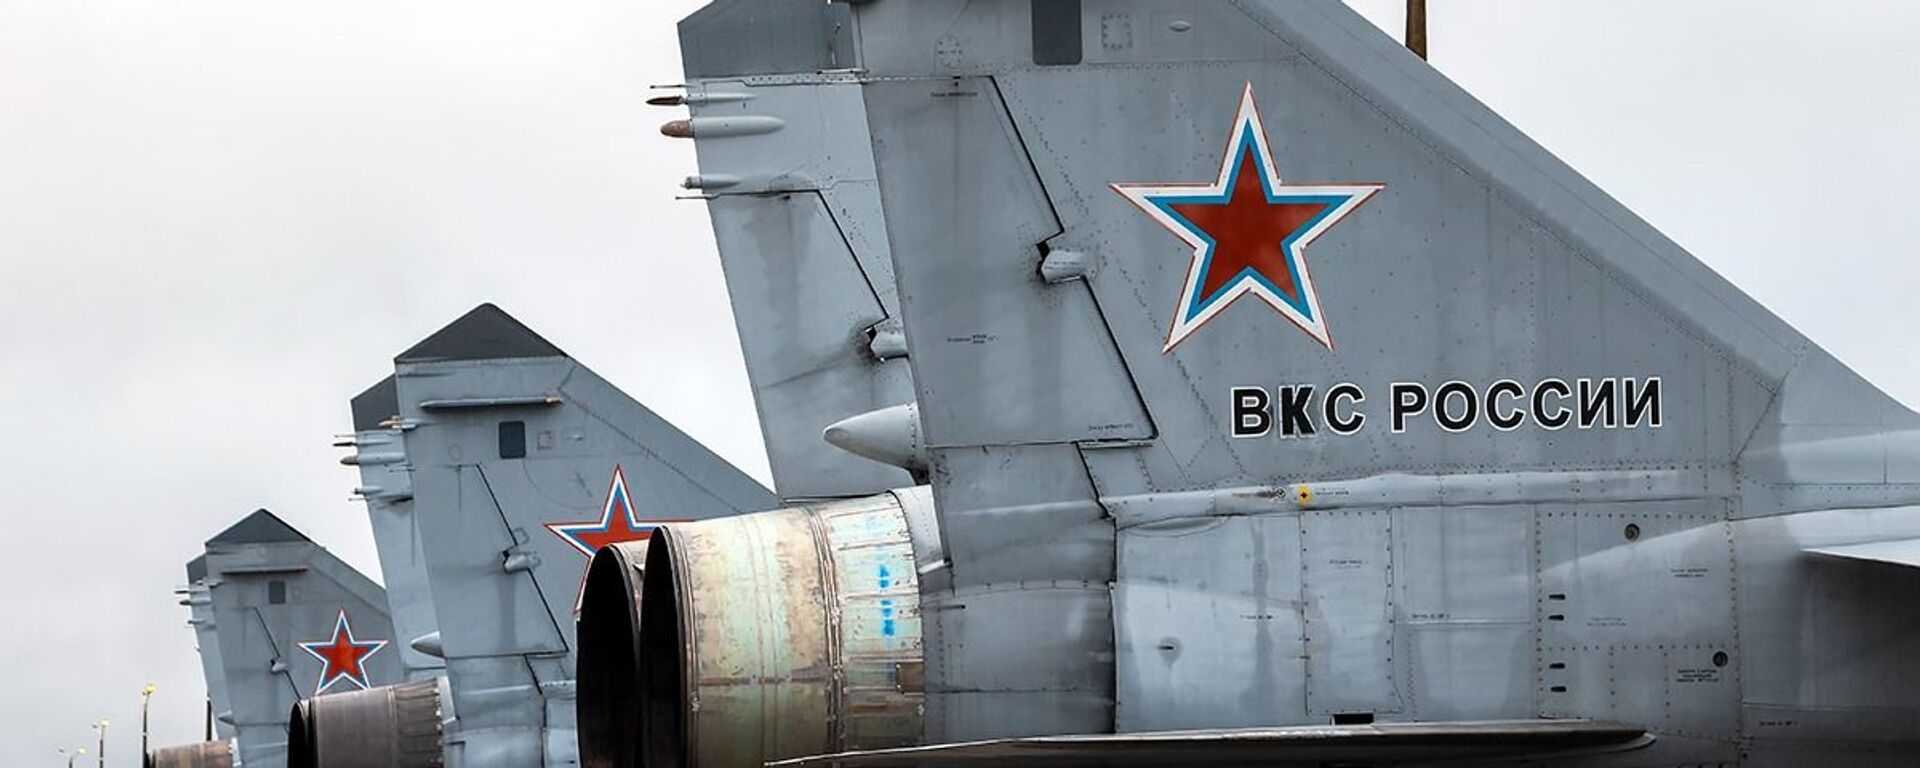 مناورات الطيران الحربي الروسي لمقاتلات «سو-25» و «ميغ- 31» التابعة للمنطقة الغربية لشرق روسيا، في مقاطعة تفير، 23-24 نوفمبر 2020 - سبوتنيك عربي, 1920, 07.10.2021